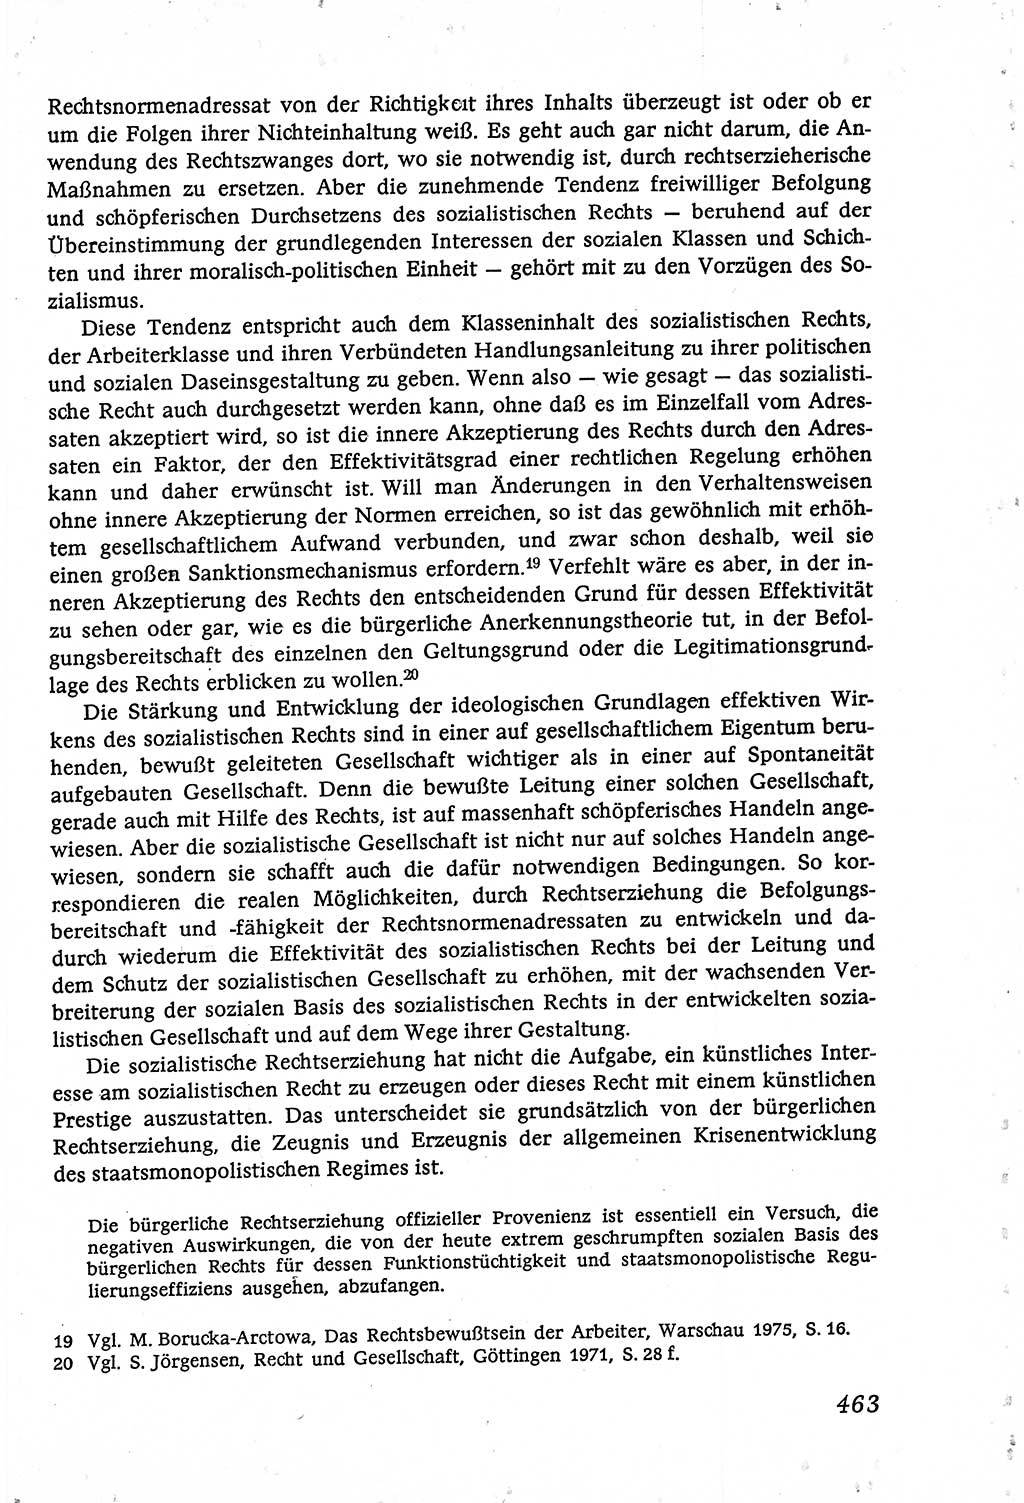 Marxistisch-leninistische (ML) Staats- und Rechtstheorie [Deutsche Demokratische Republik (DDR)], Lehrbuch 1980, Seite 463 (ML St.-R.-Th. DDR Lb. 1980, S. 463)